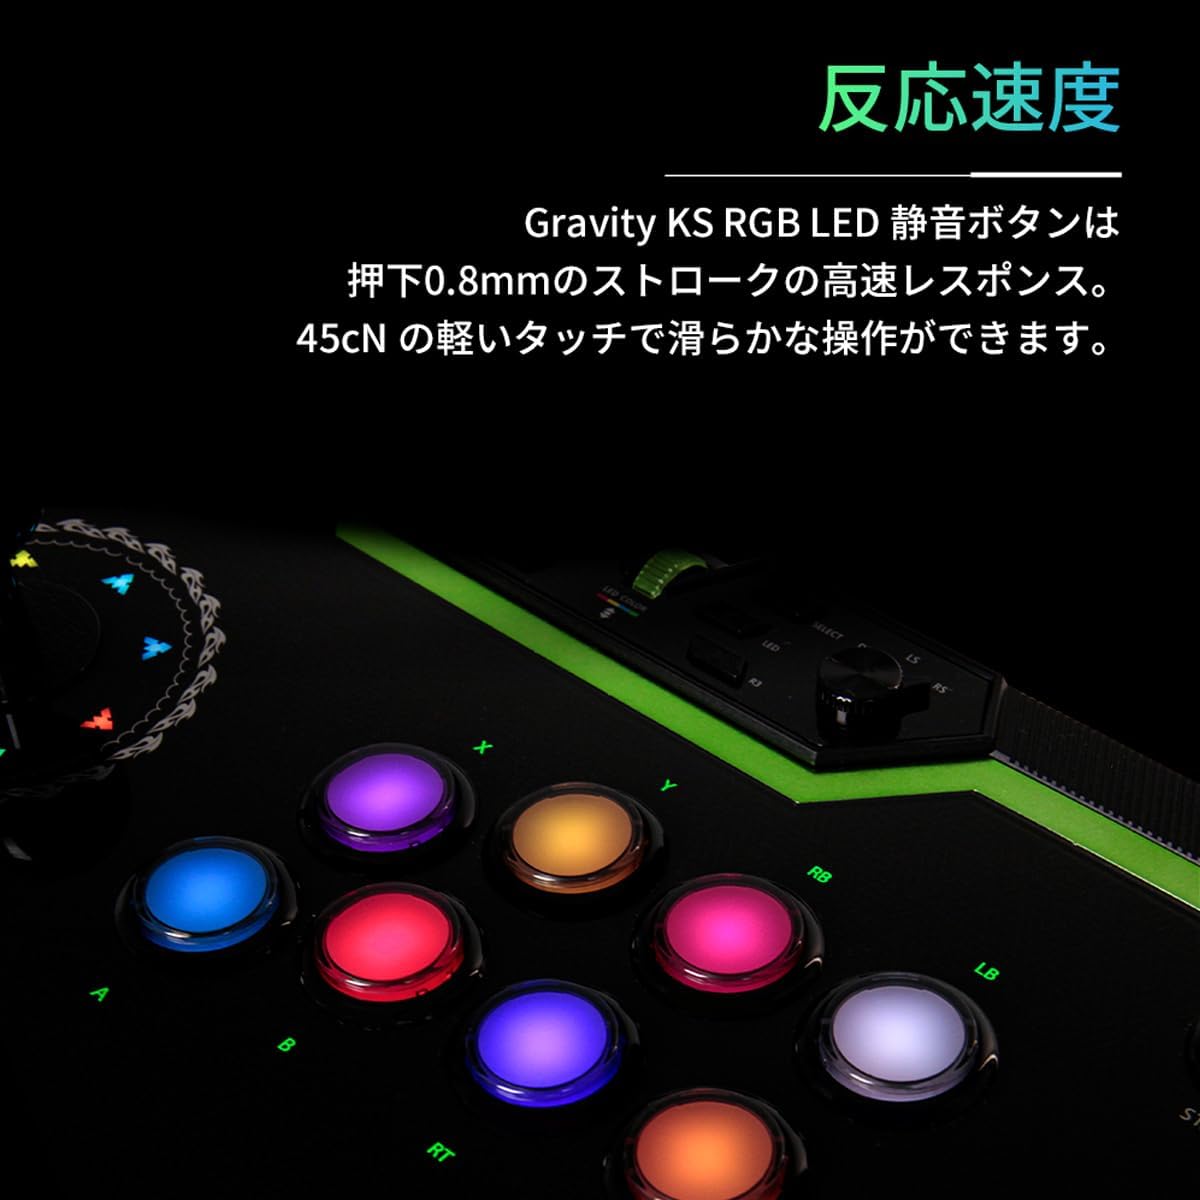 Qanbaのアケコン「Q8-GR」がAmazonにてセール！　 game.watch.impress.co.jp/docs/news/1596… #アケコン #Amazon